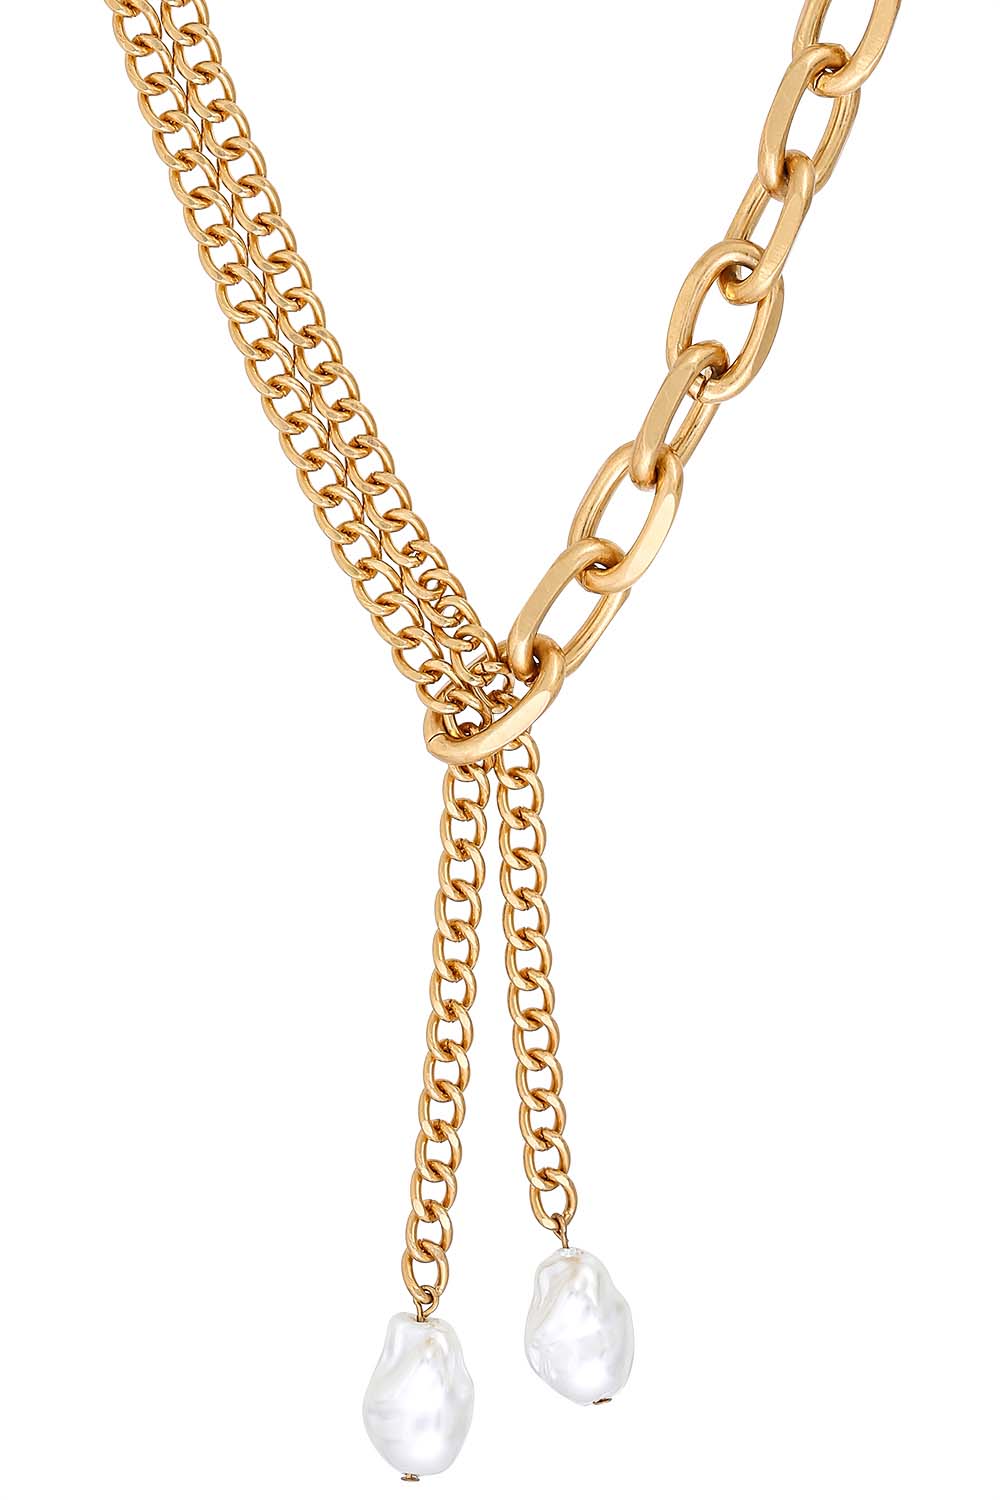 Schmuck Ketten Perlenketten Perlenkette mit Malachitedelsteinen *neuwertig* 